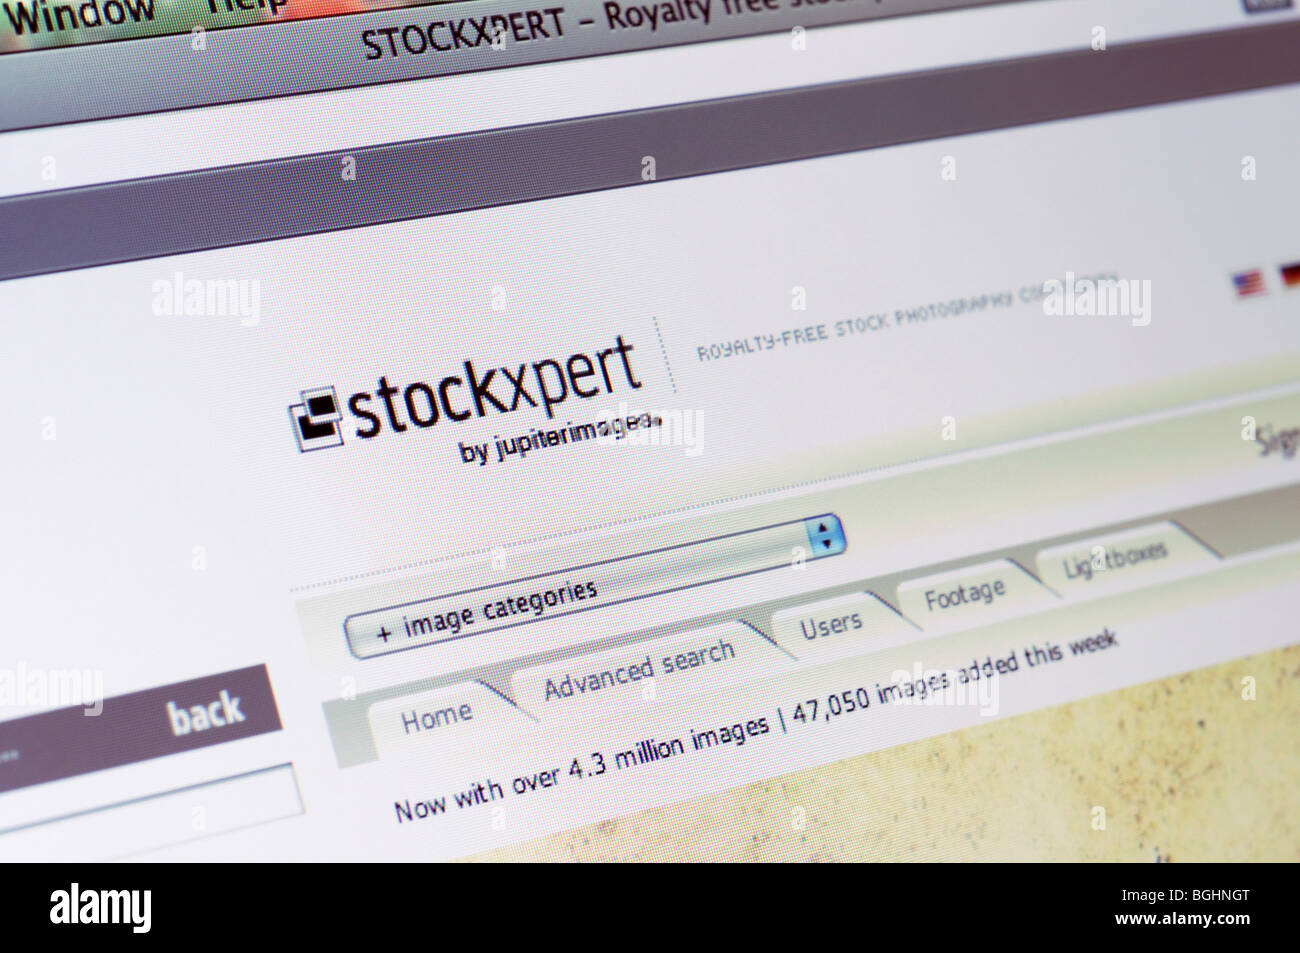 StockXpert image agency website Stock Photo